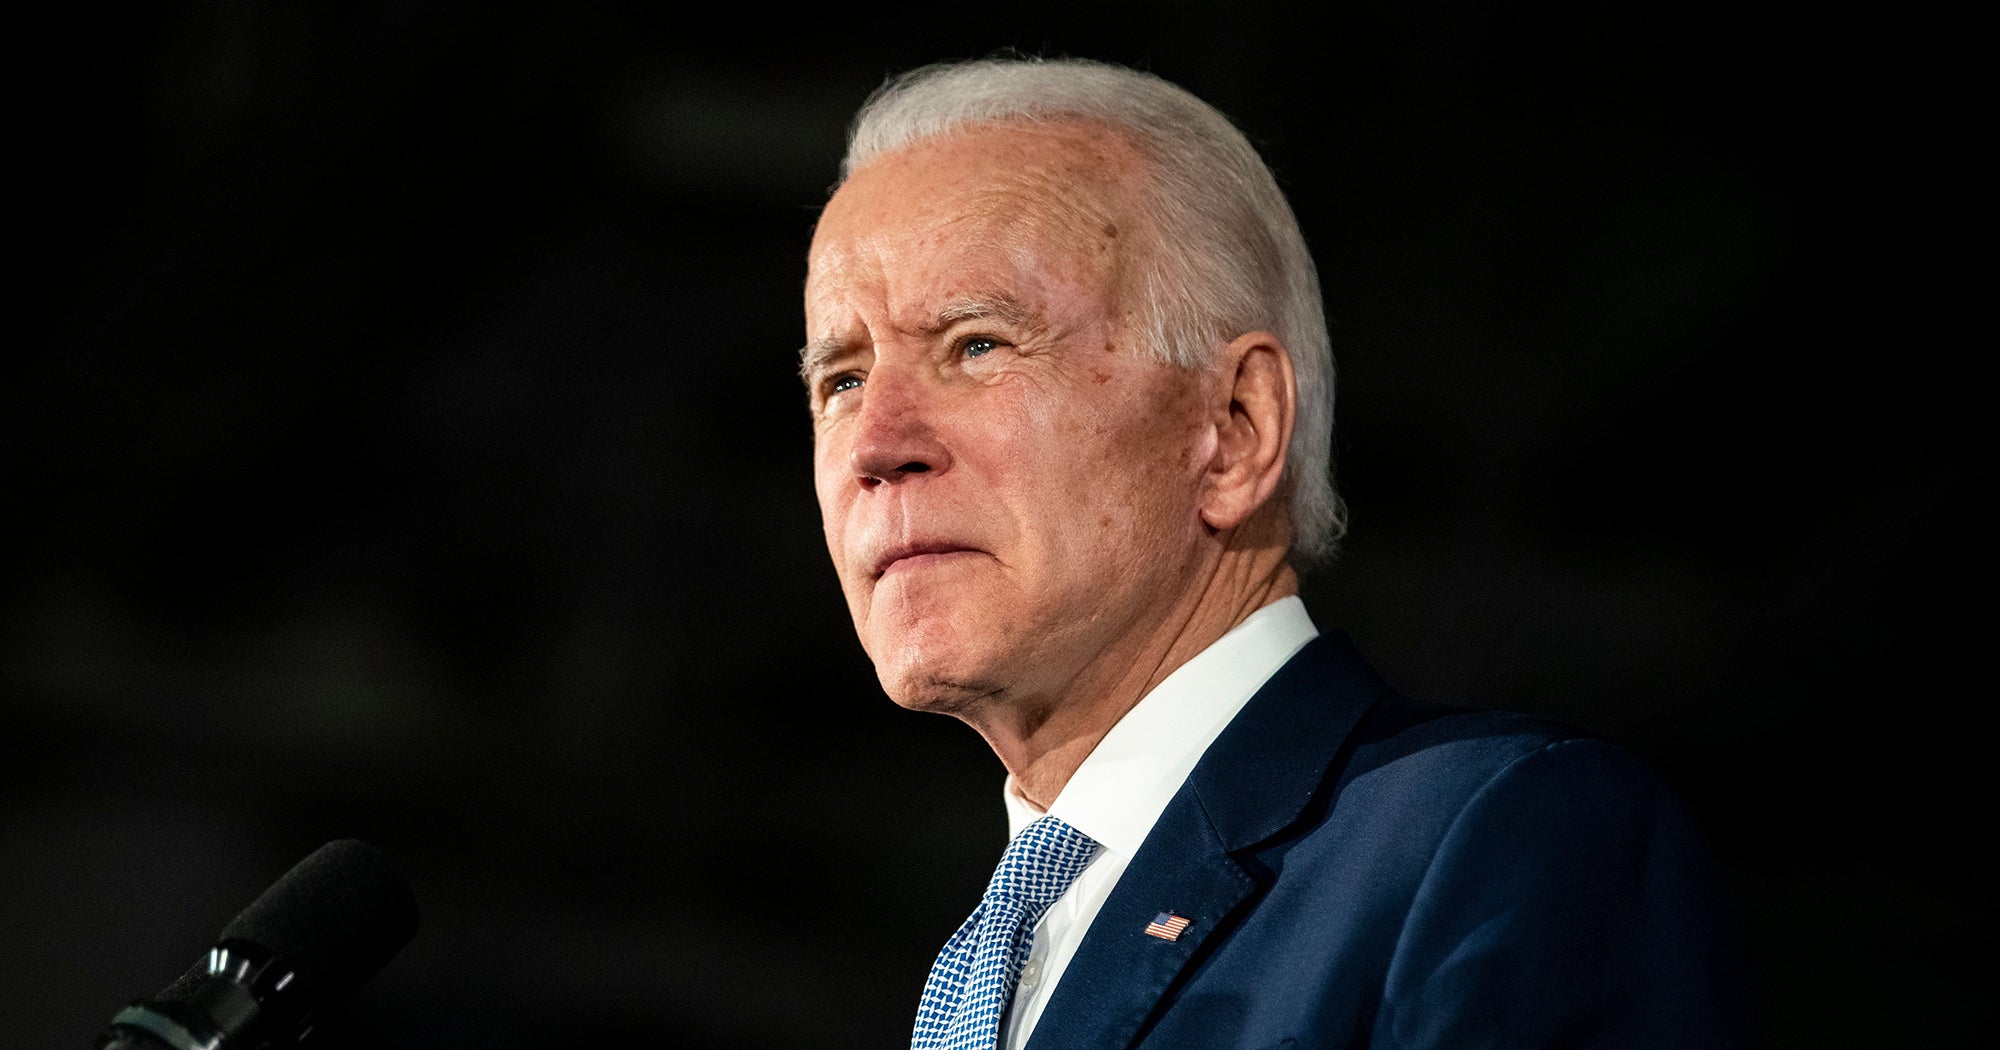 Witnesses Confirm Joe Biden Sexual Assault Allegation